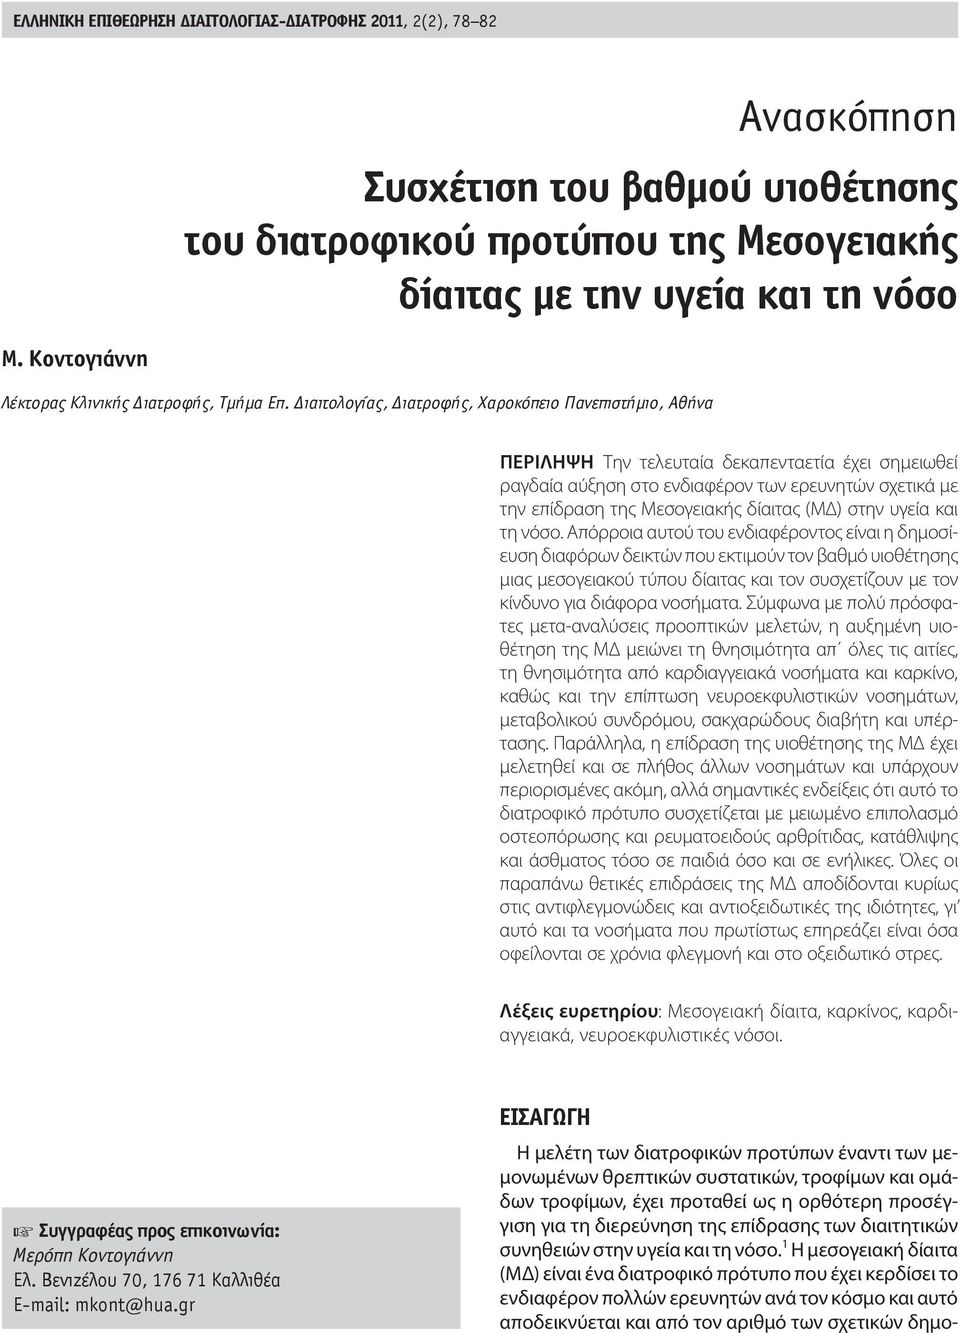 ιαιτολογίας, ιατροφής, Χαροκόπειο Πανεπιστήμιο, Αθήνα ΠΕΡΙΛΗΨΗ Την τελευταία δεκαπενταετία έχει σημειωθεί ραγδαία αύξηση στο ενδιαφέρον των ερευνητών σχετικά με την επίδραση της Μεσογειακής δίαιτας